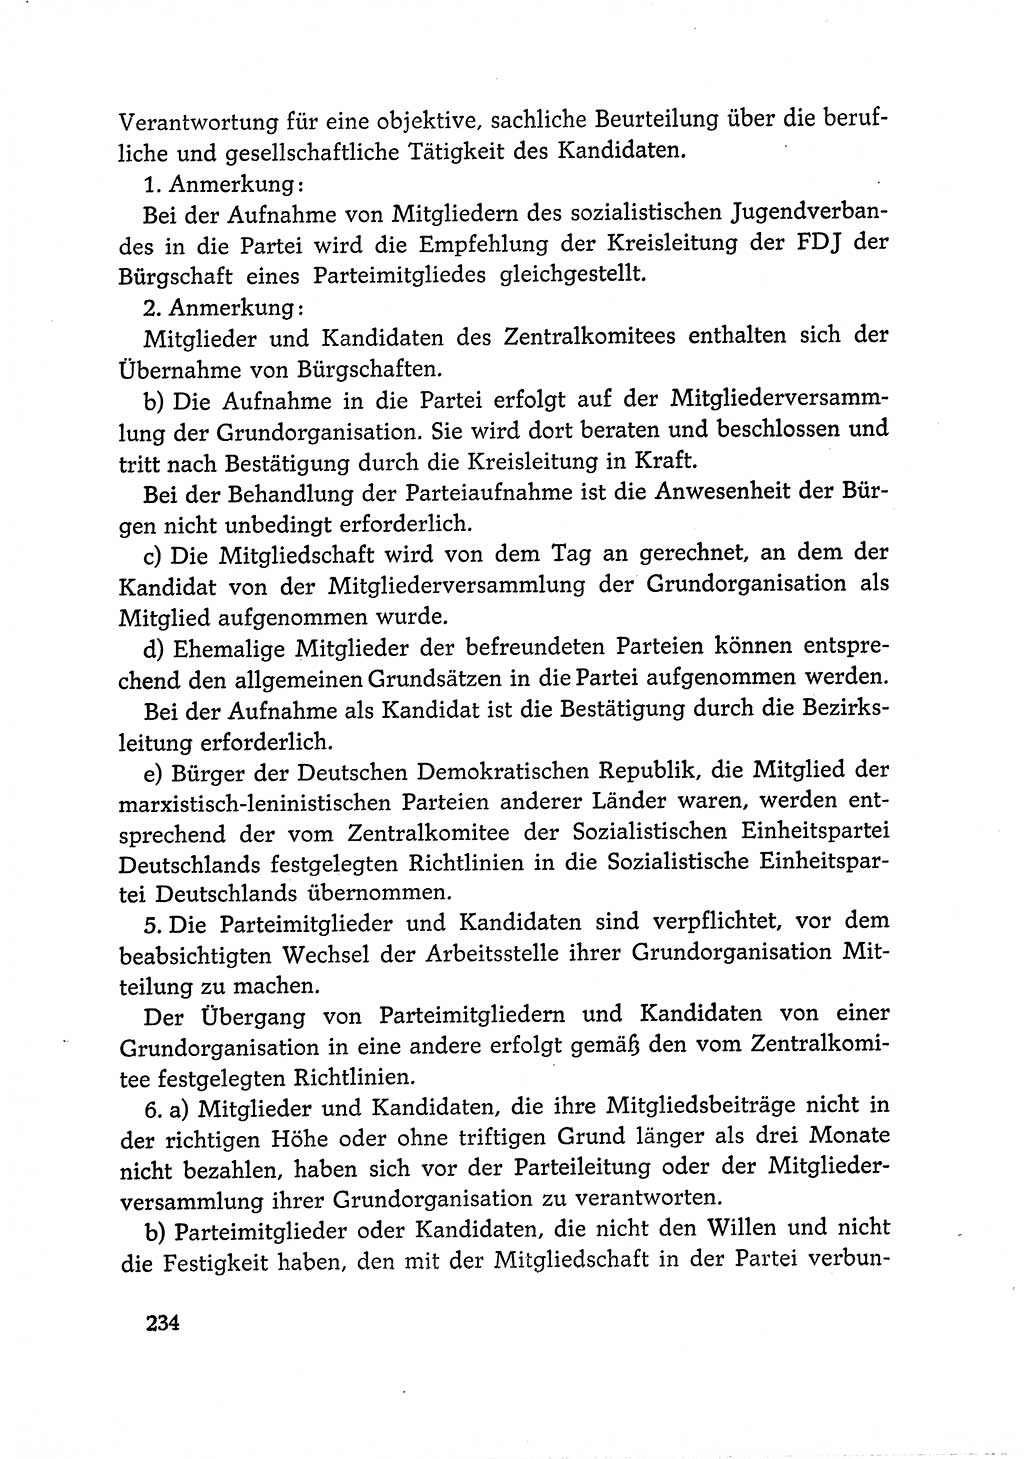 Dokumente der Sozialistischen Einheitspartei Deutschlands (SED) [Deutsche Demokratische Republik (DDR)] 1966-1967, Seite 234 (Dok. SED DDR 1966-1967, S. 234)